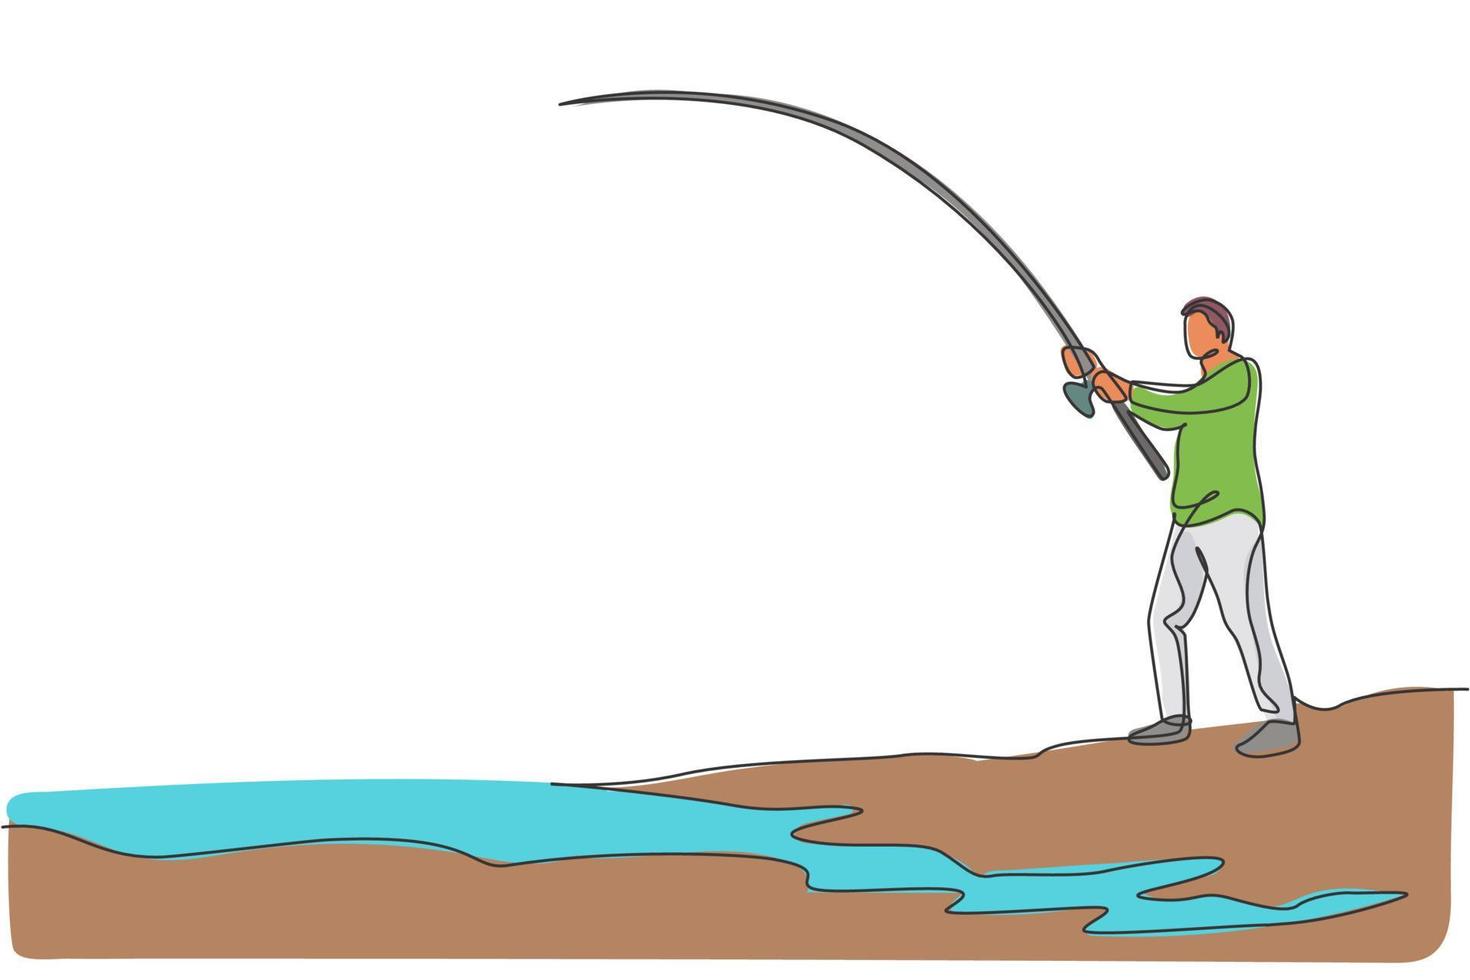 eine durchgehende Strichzeichnung eines jungen, glücklichen Fischers, der am Flussufer steht und einen Fisch fischt. angeln freizeit hobby urlaubskonzept. dynamische einzeilige zeichnen design vektorgrafik illustration vektor